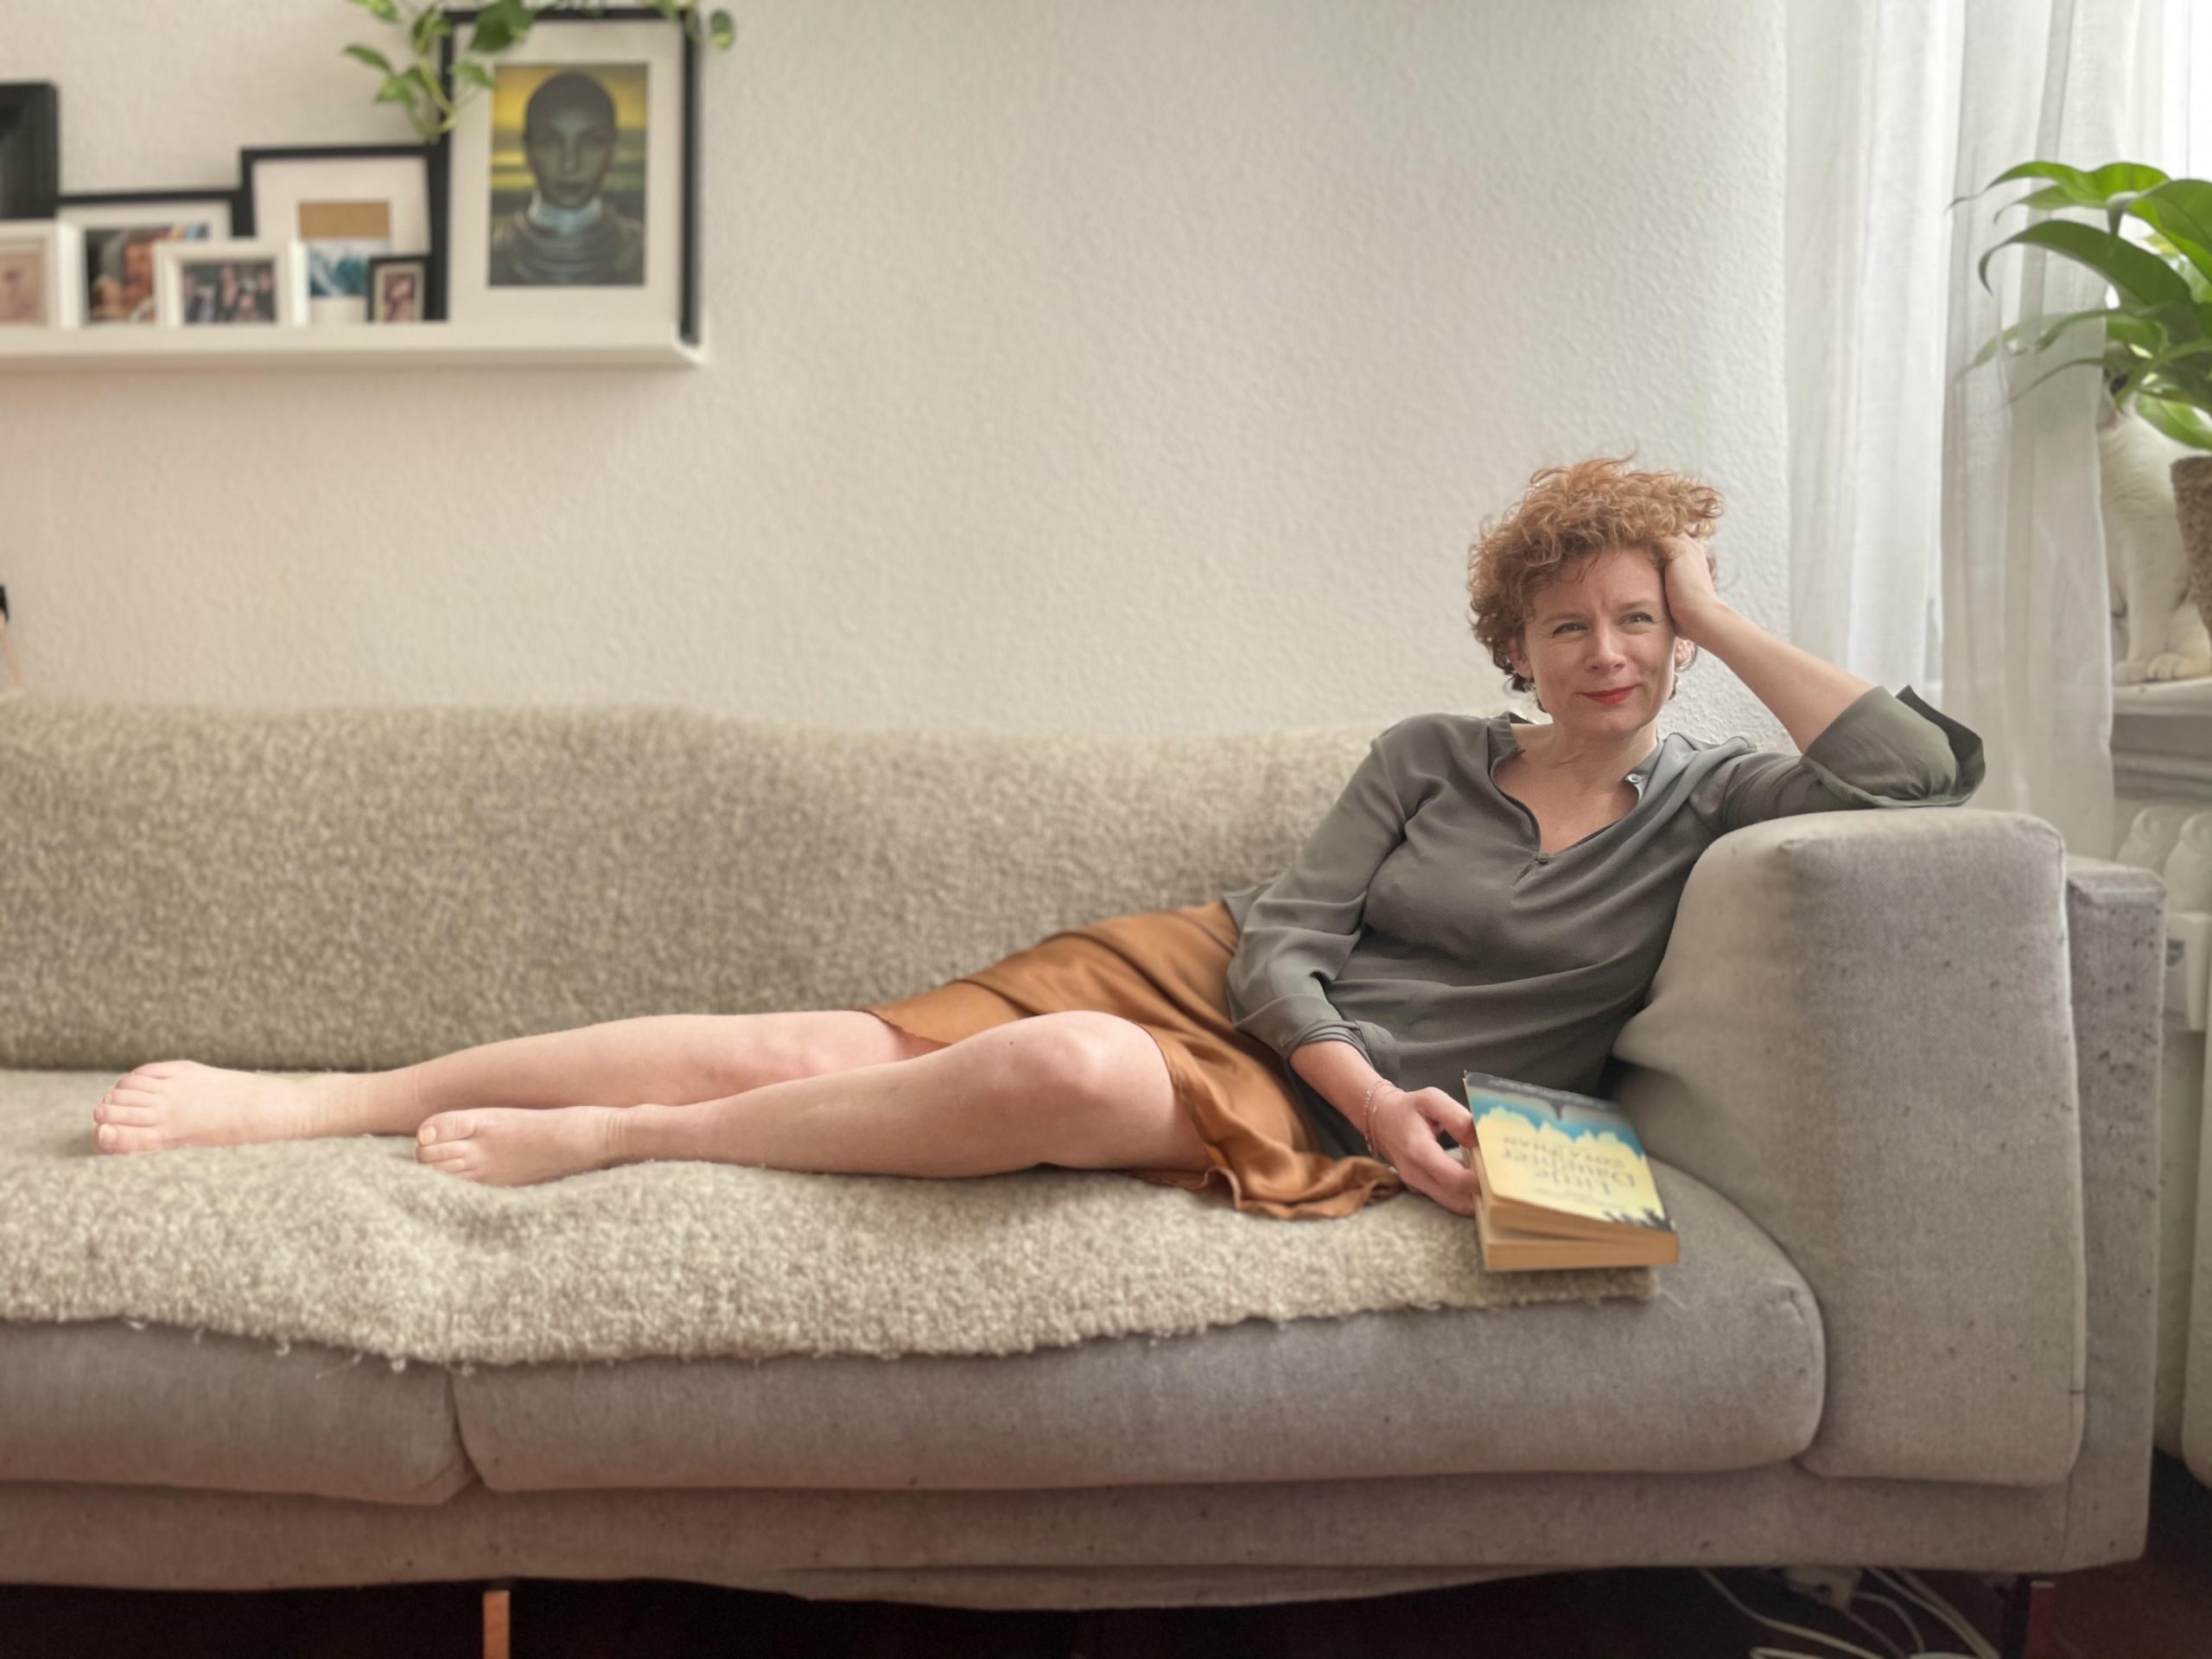 Auf dem Foto ist die Autorin Tina Molin zu sehen, die lächelnd und mit einem Buch in der Hand auf einem Sofa lehnt.